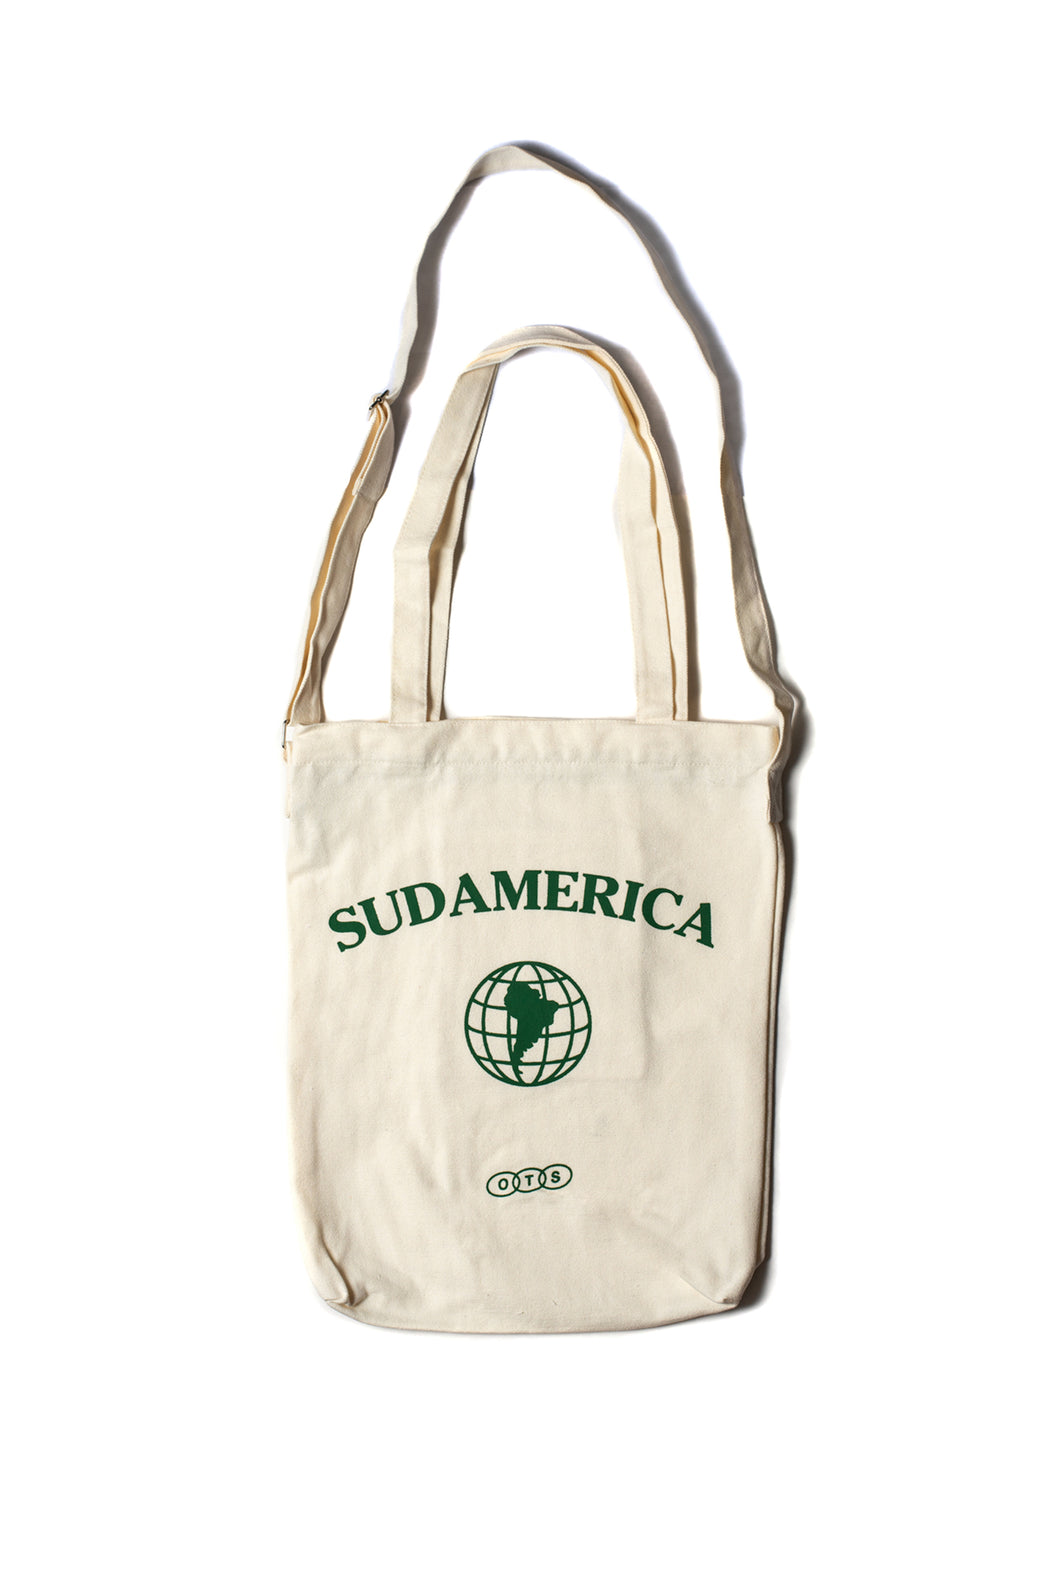 Sudamerica Tote Bag